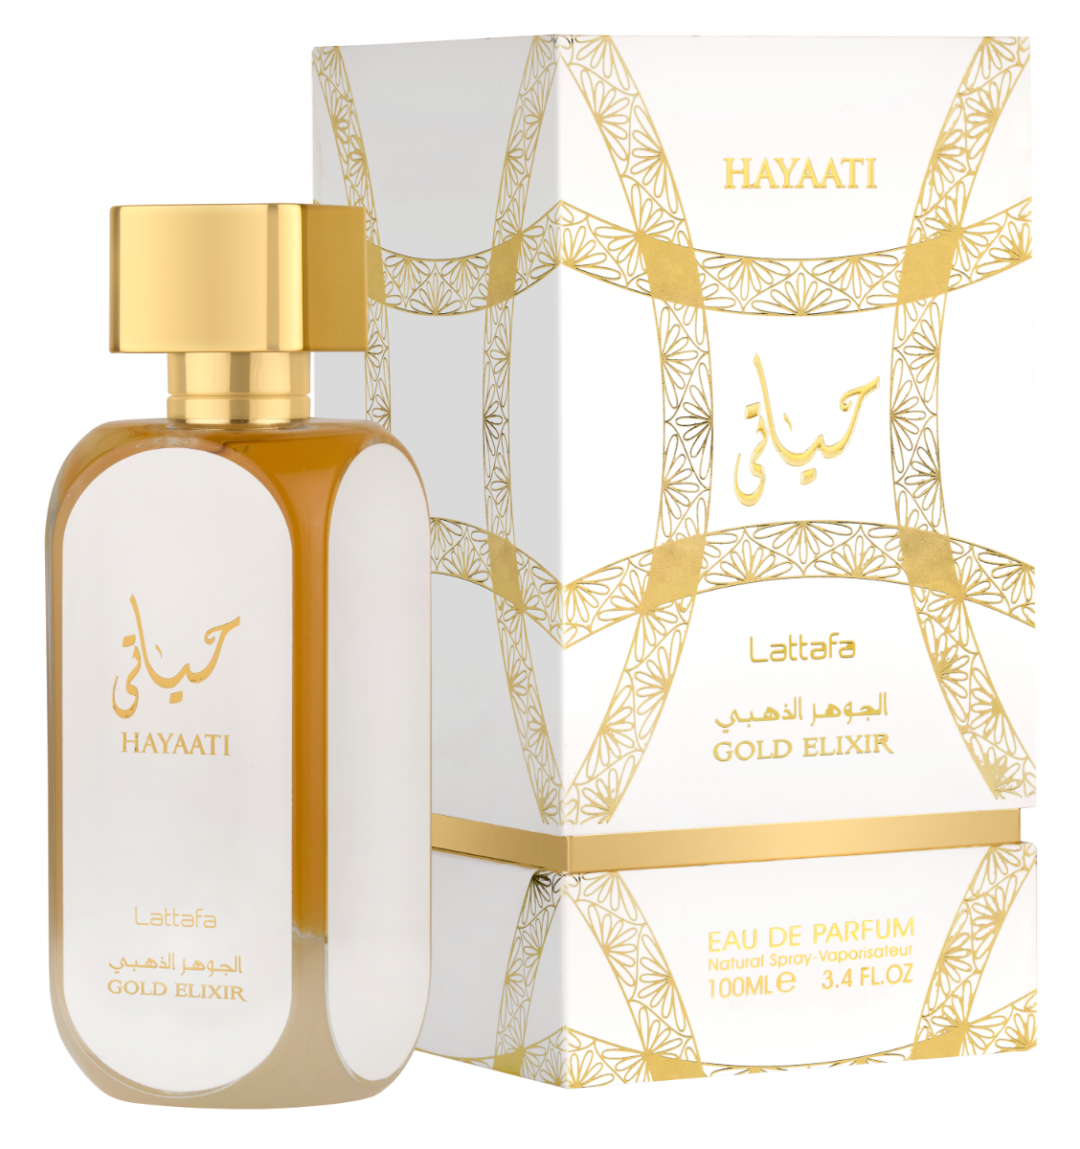 Hayaati Gold Elixir - Lattafa